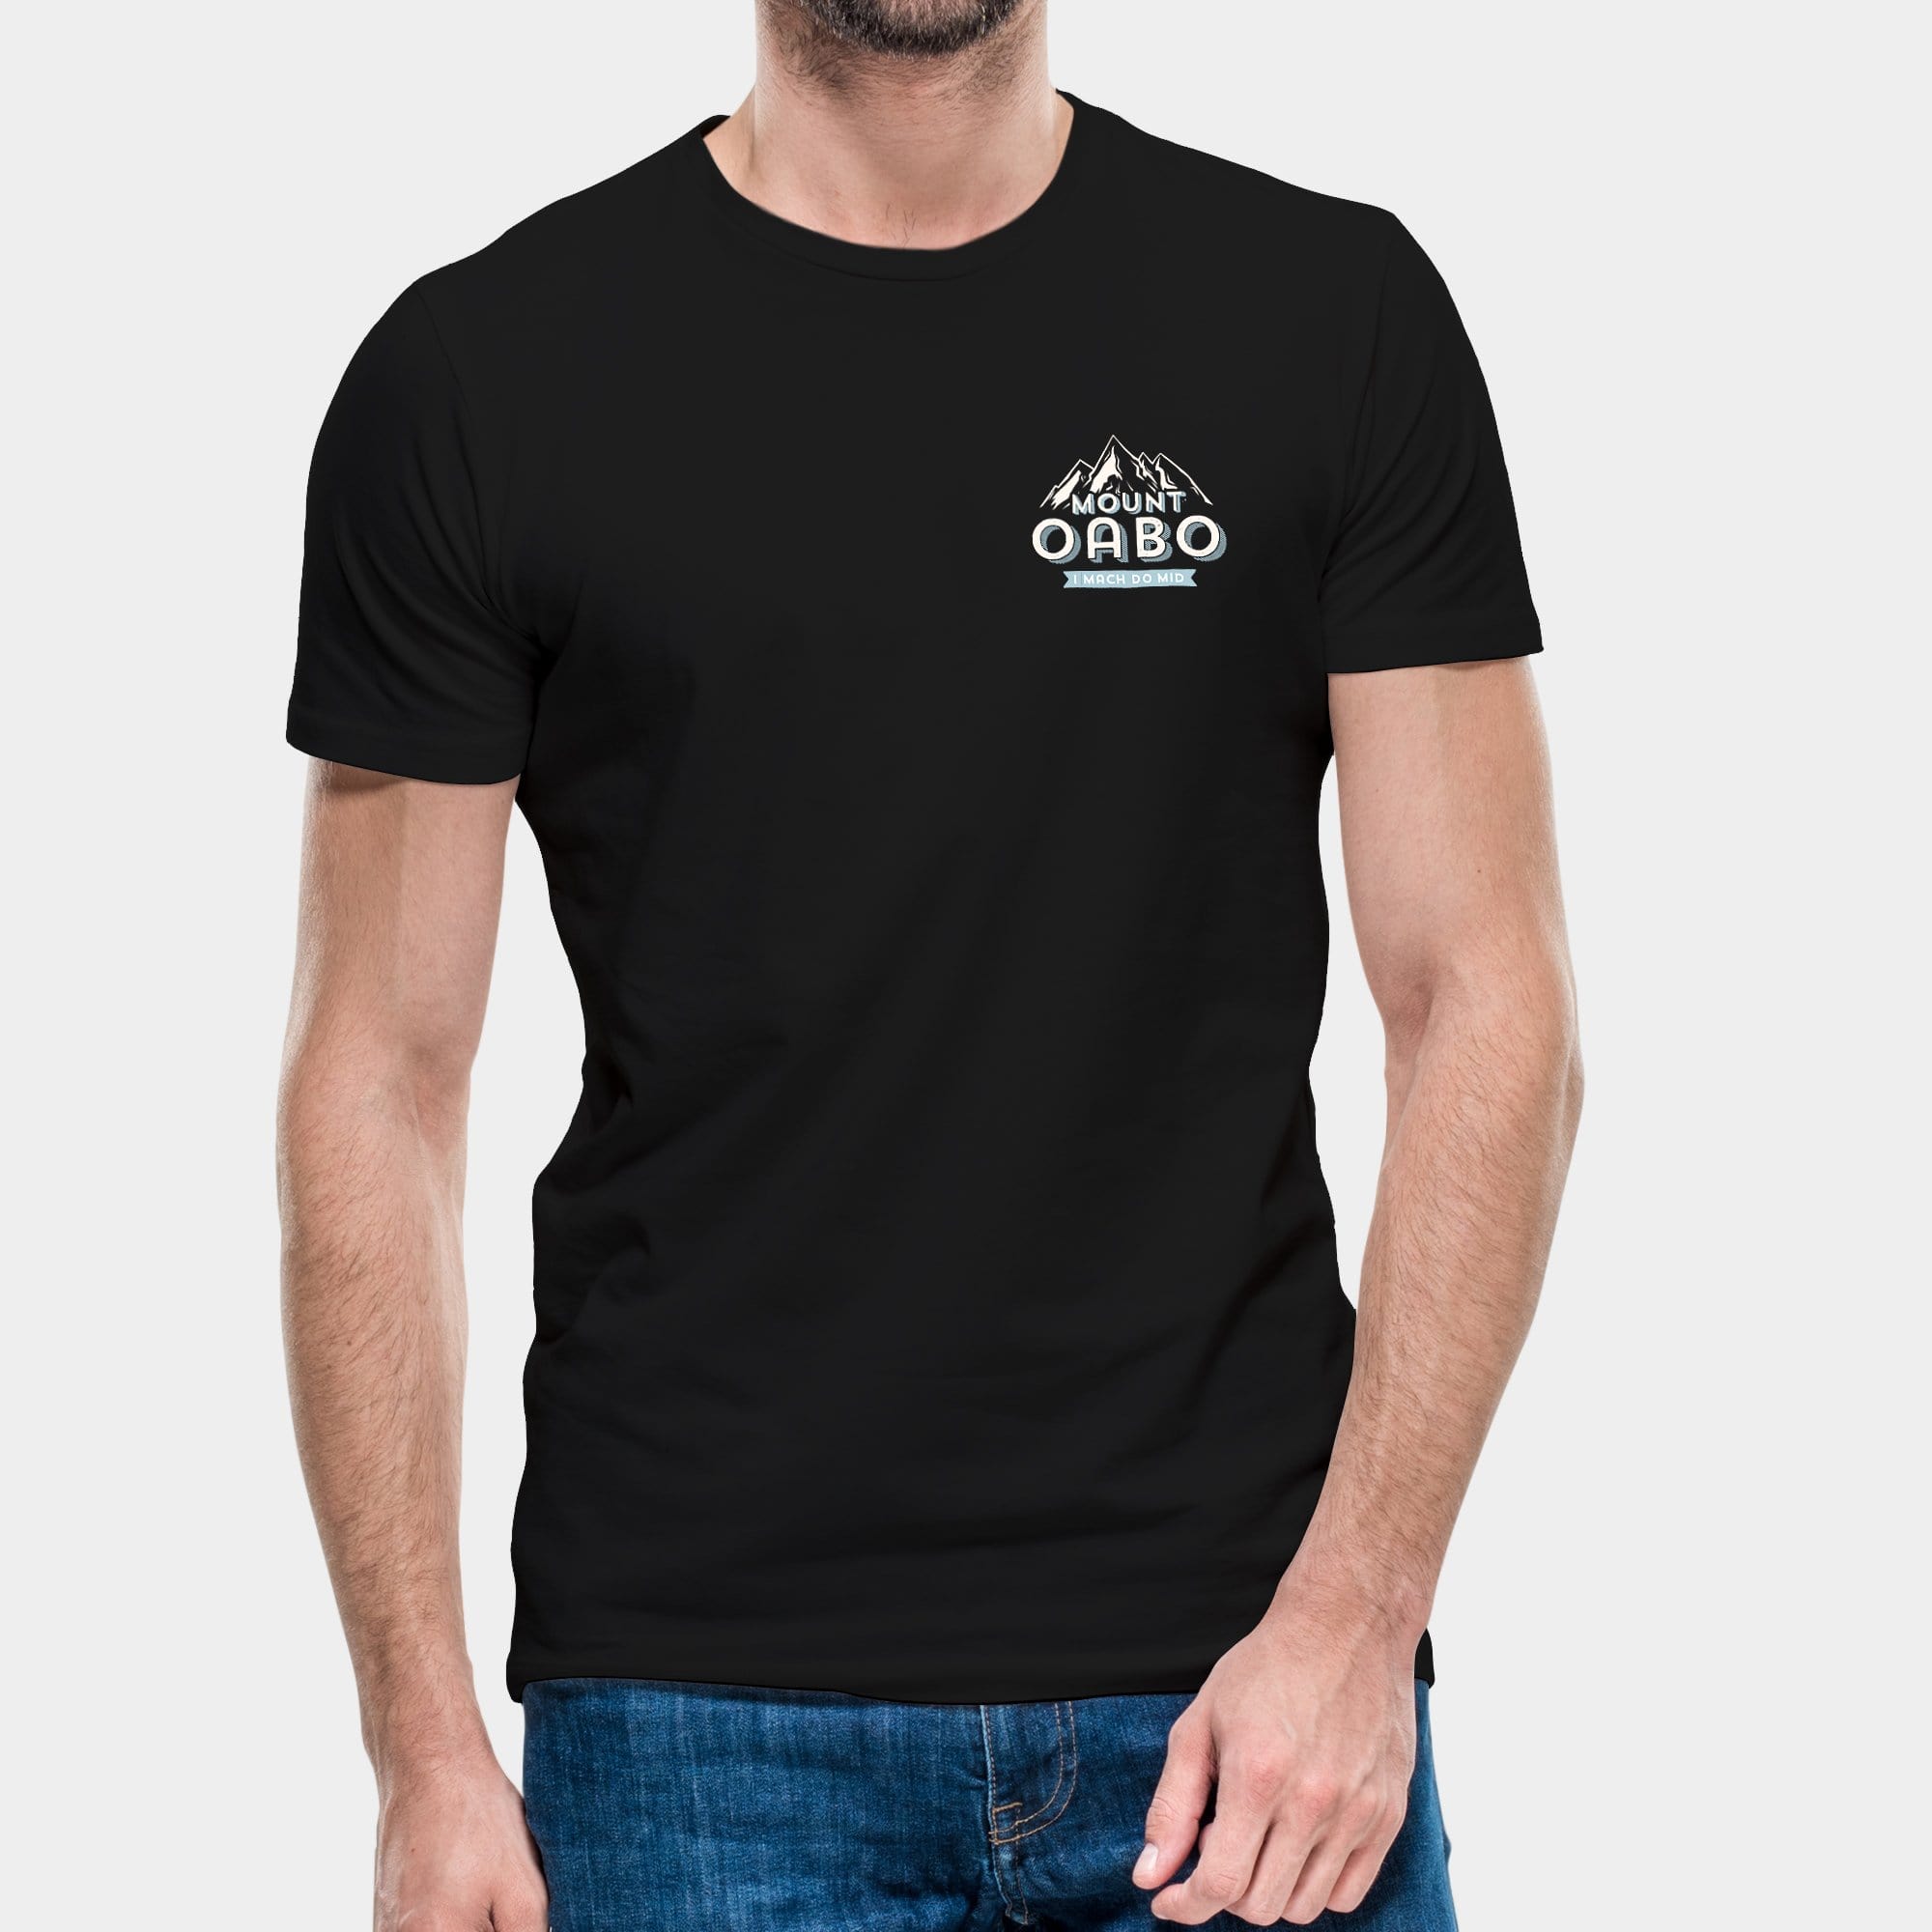 Projekt Herren-T-Shirt "Mount Oabo" S / schwarz - aus nachhaltiger und fairer Produktion